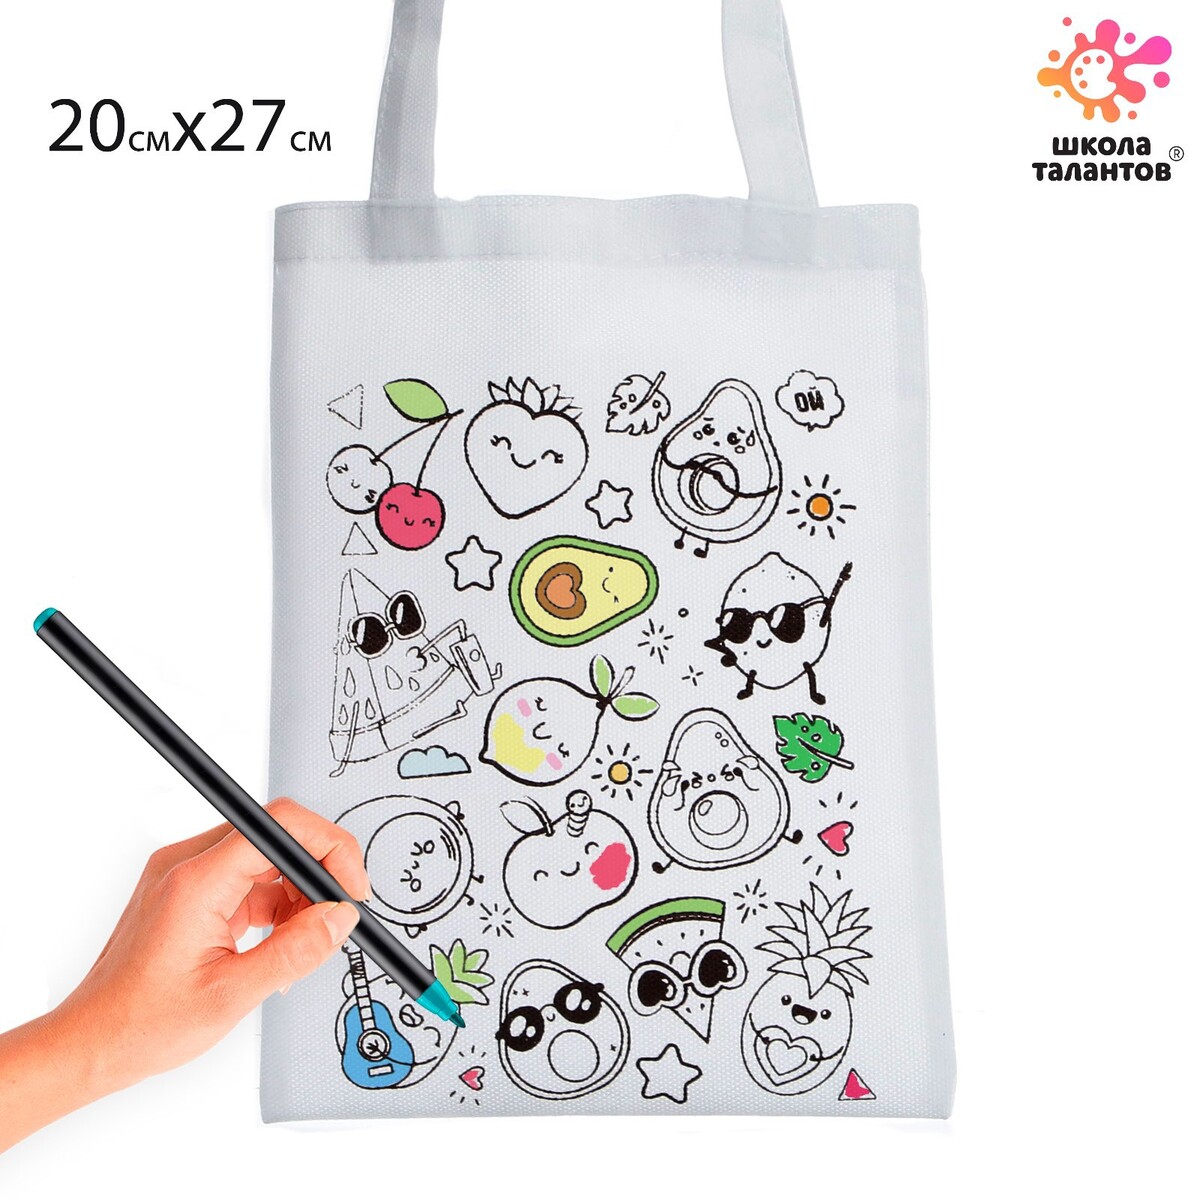 Сумка-шоппер, раскраска Школа талантов 01239772: купить за 270 руб в  интернет магазине с бесплатной доставкой